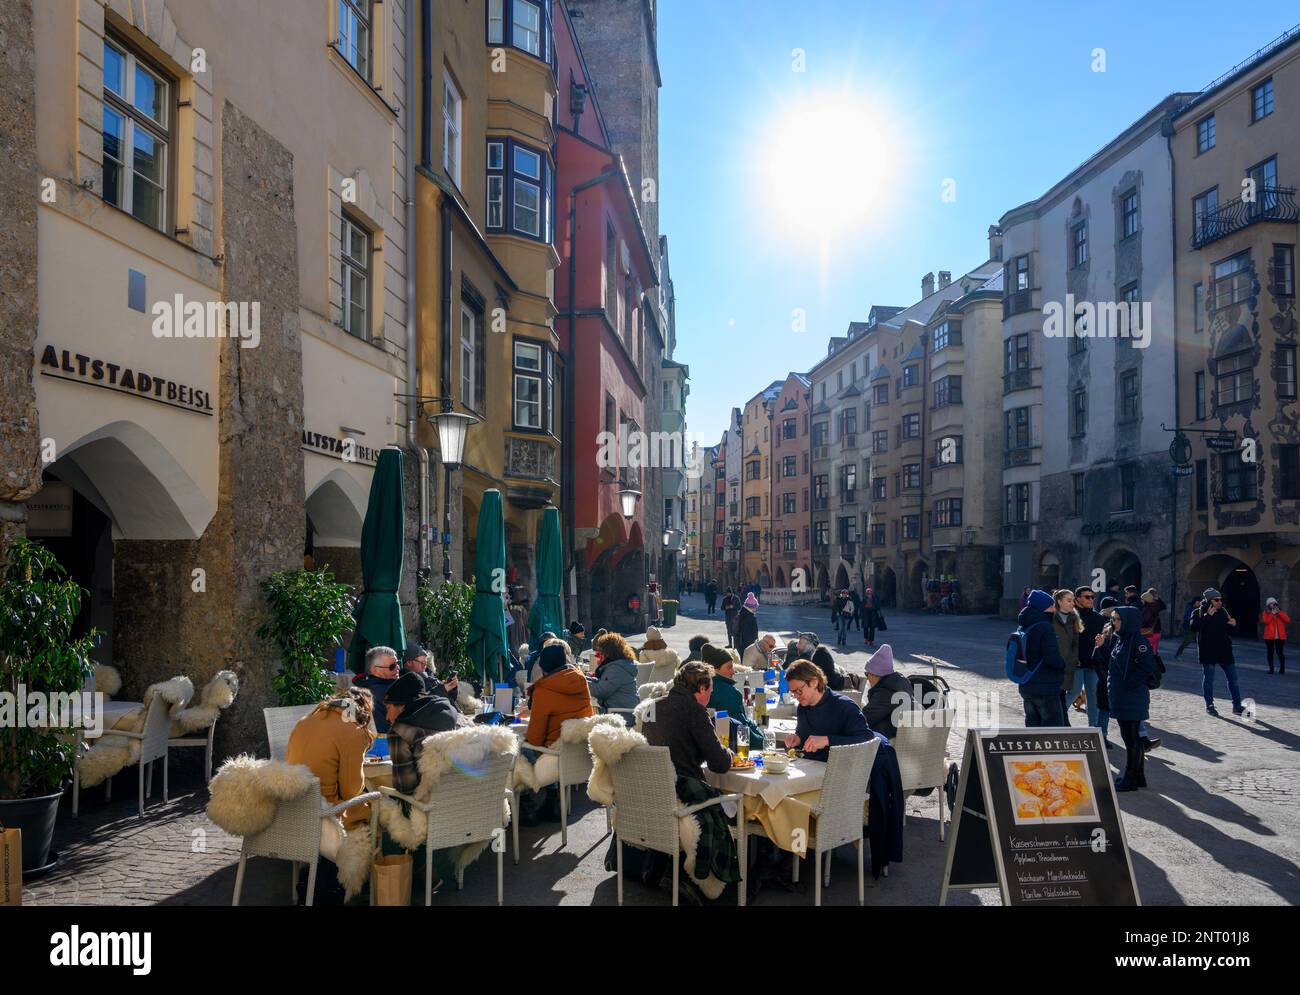 Sidewalk Cafe / Restaurant on Herzog-Friedrich Strasse in the Old Town (altstadt), Innsbruck, Austria Stock Photo